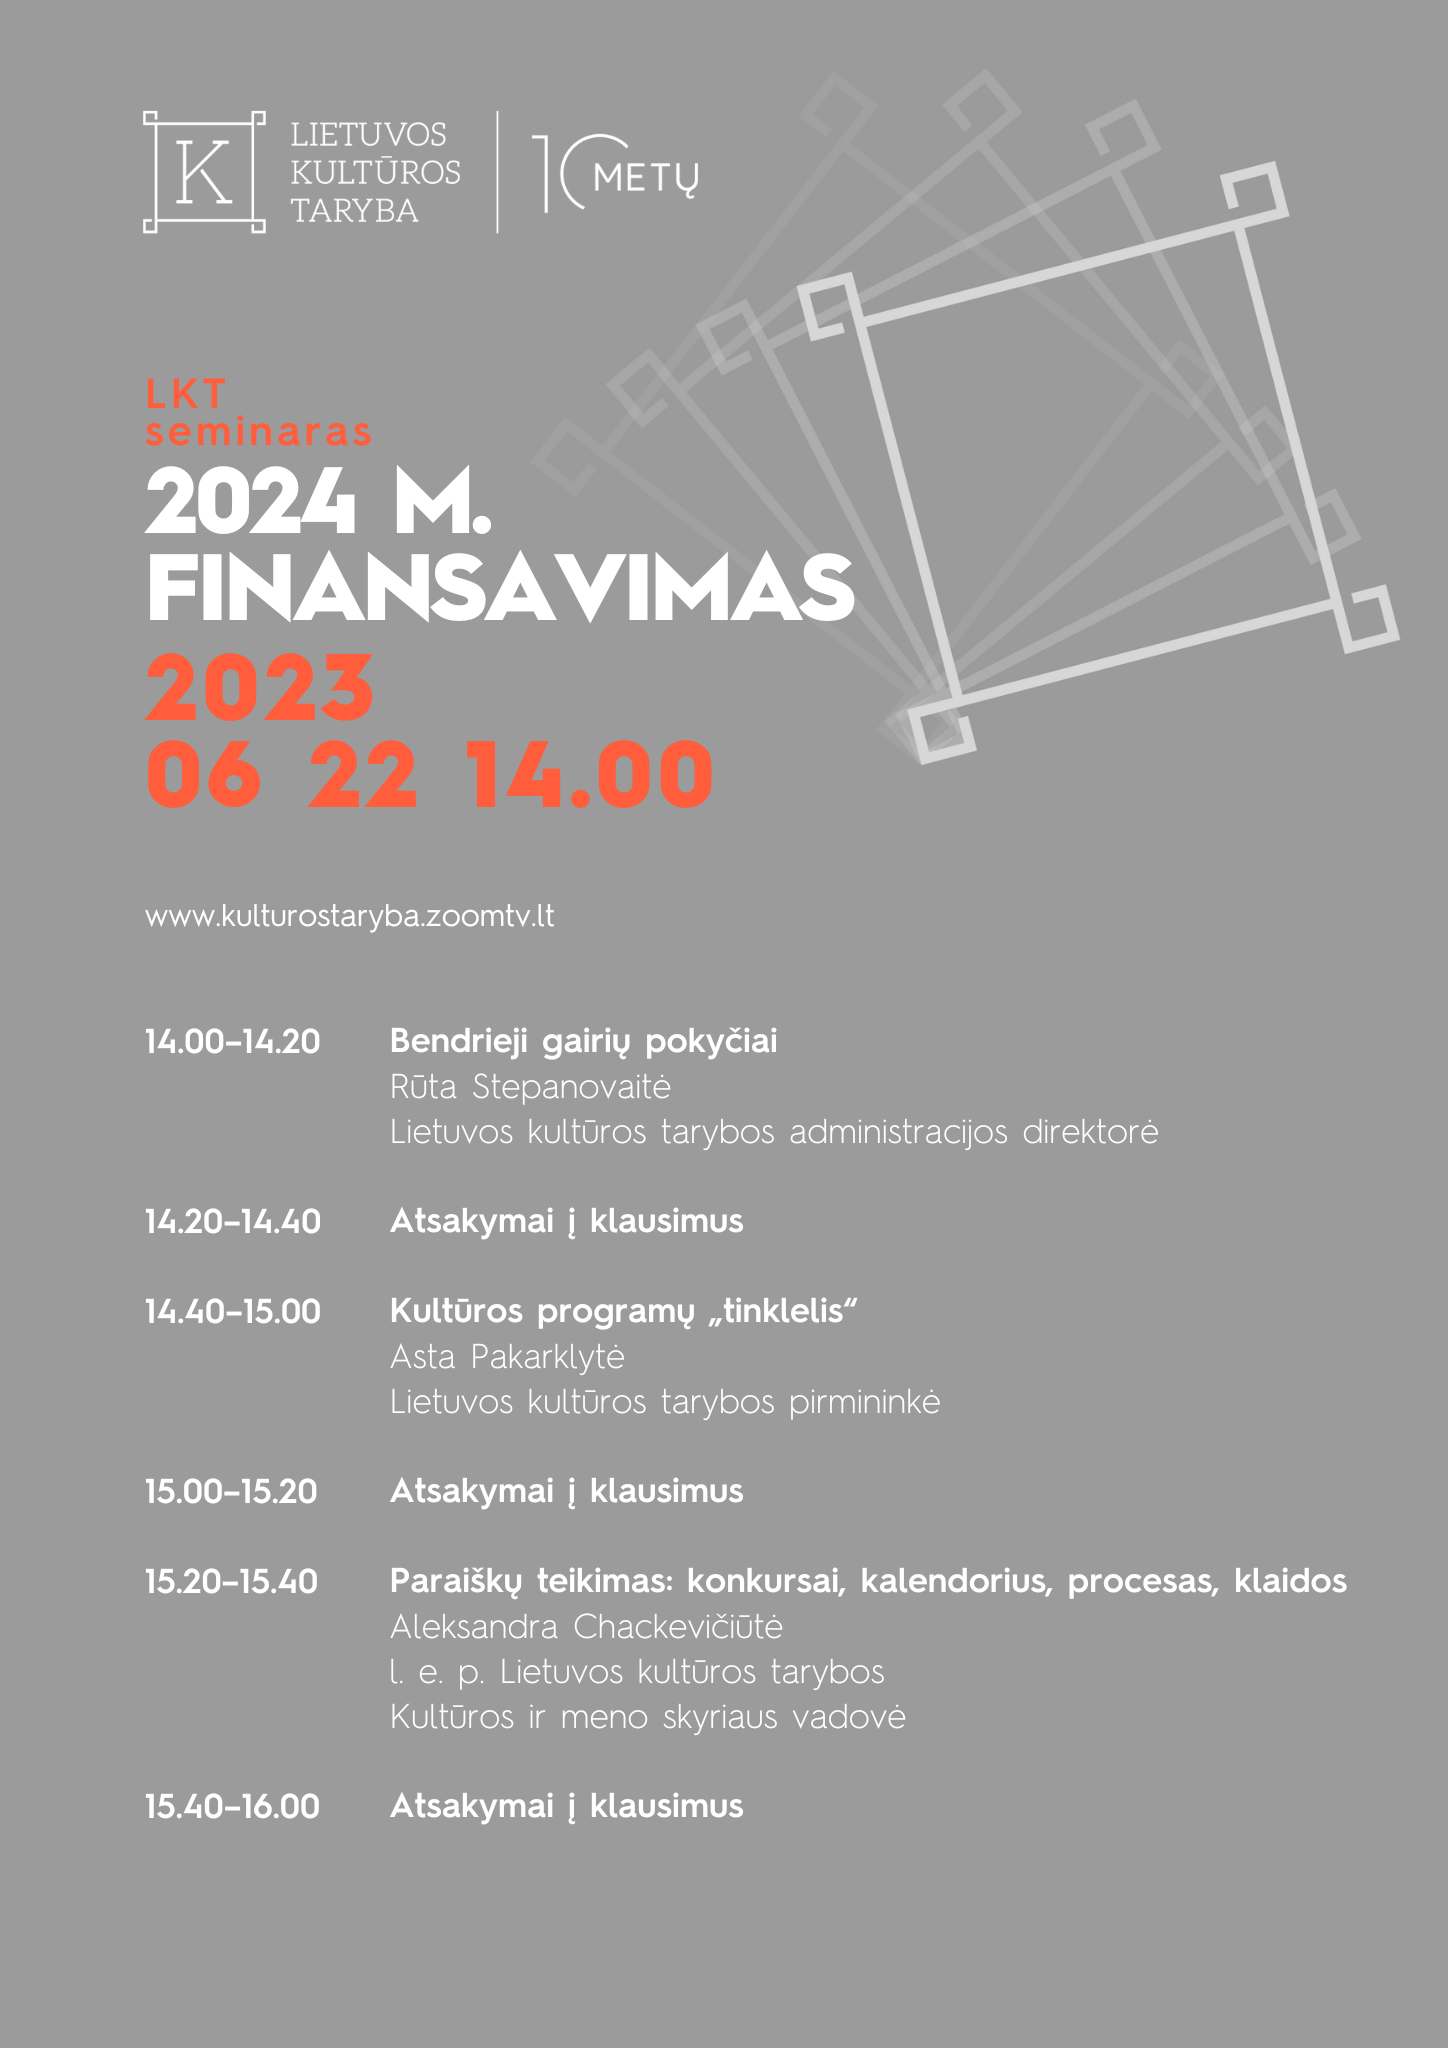 LKT seminaras: 2024 m. finansavimas